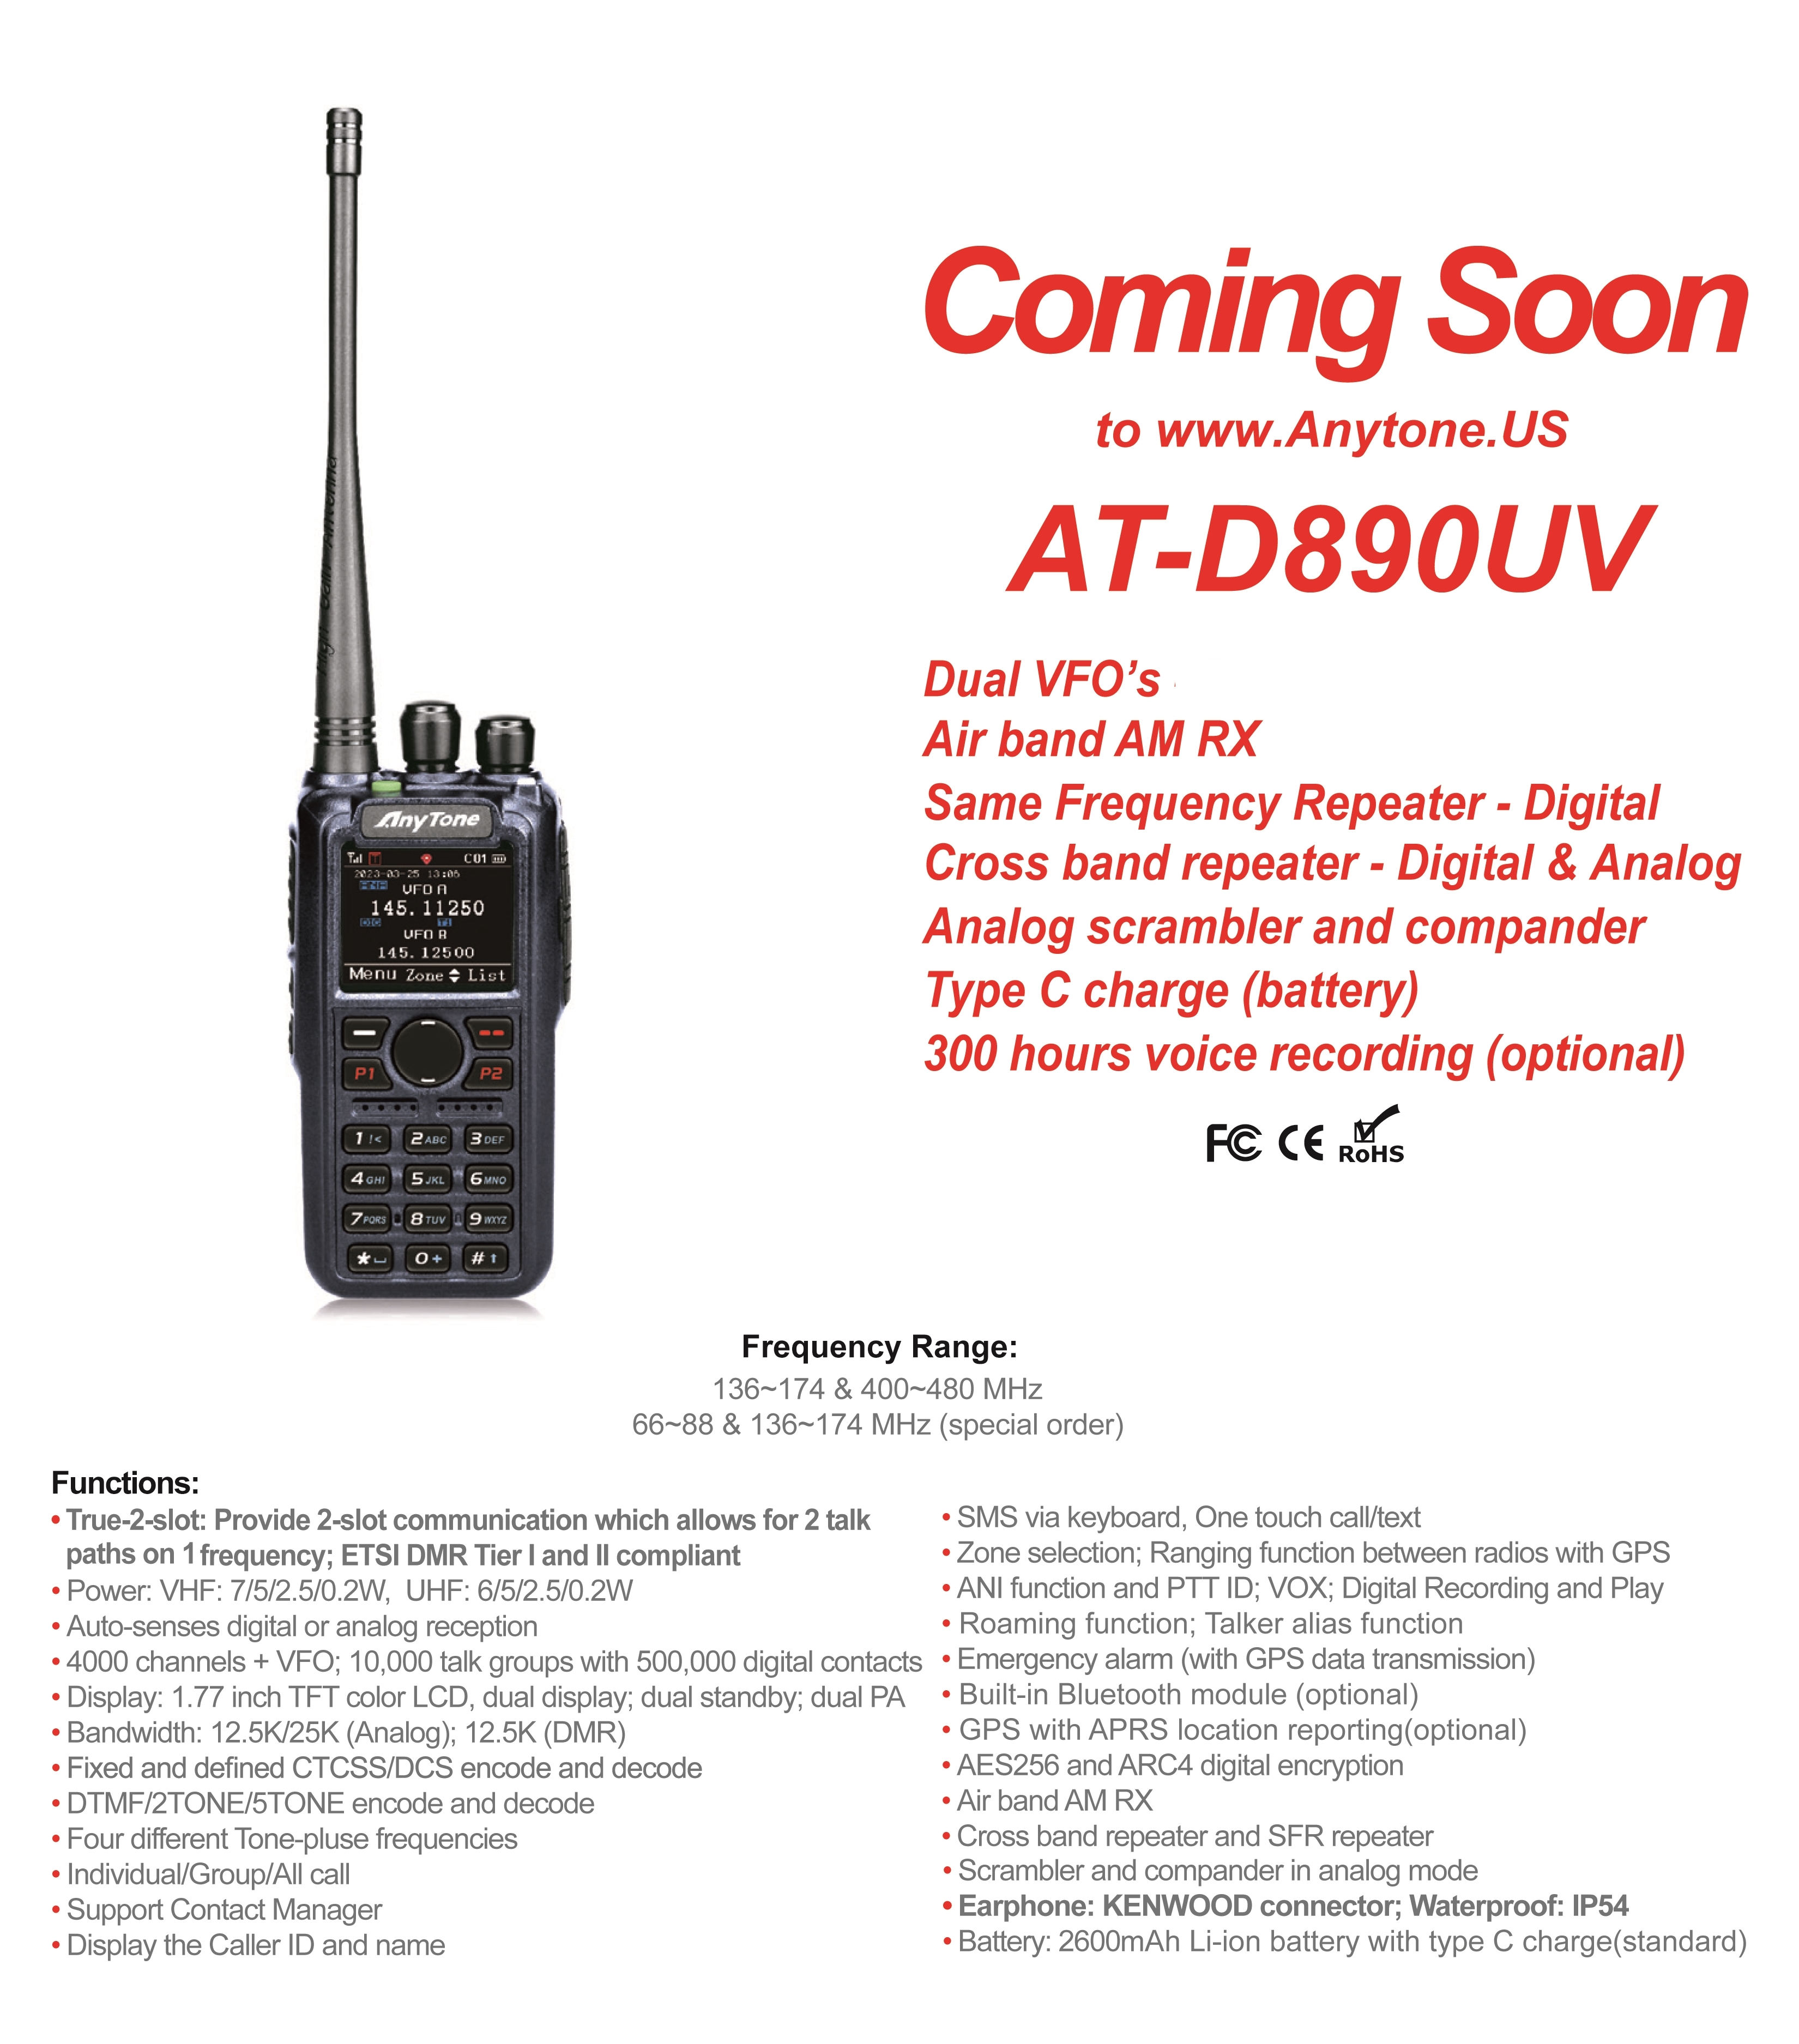 AT-D890UV Coming Soon